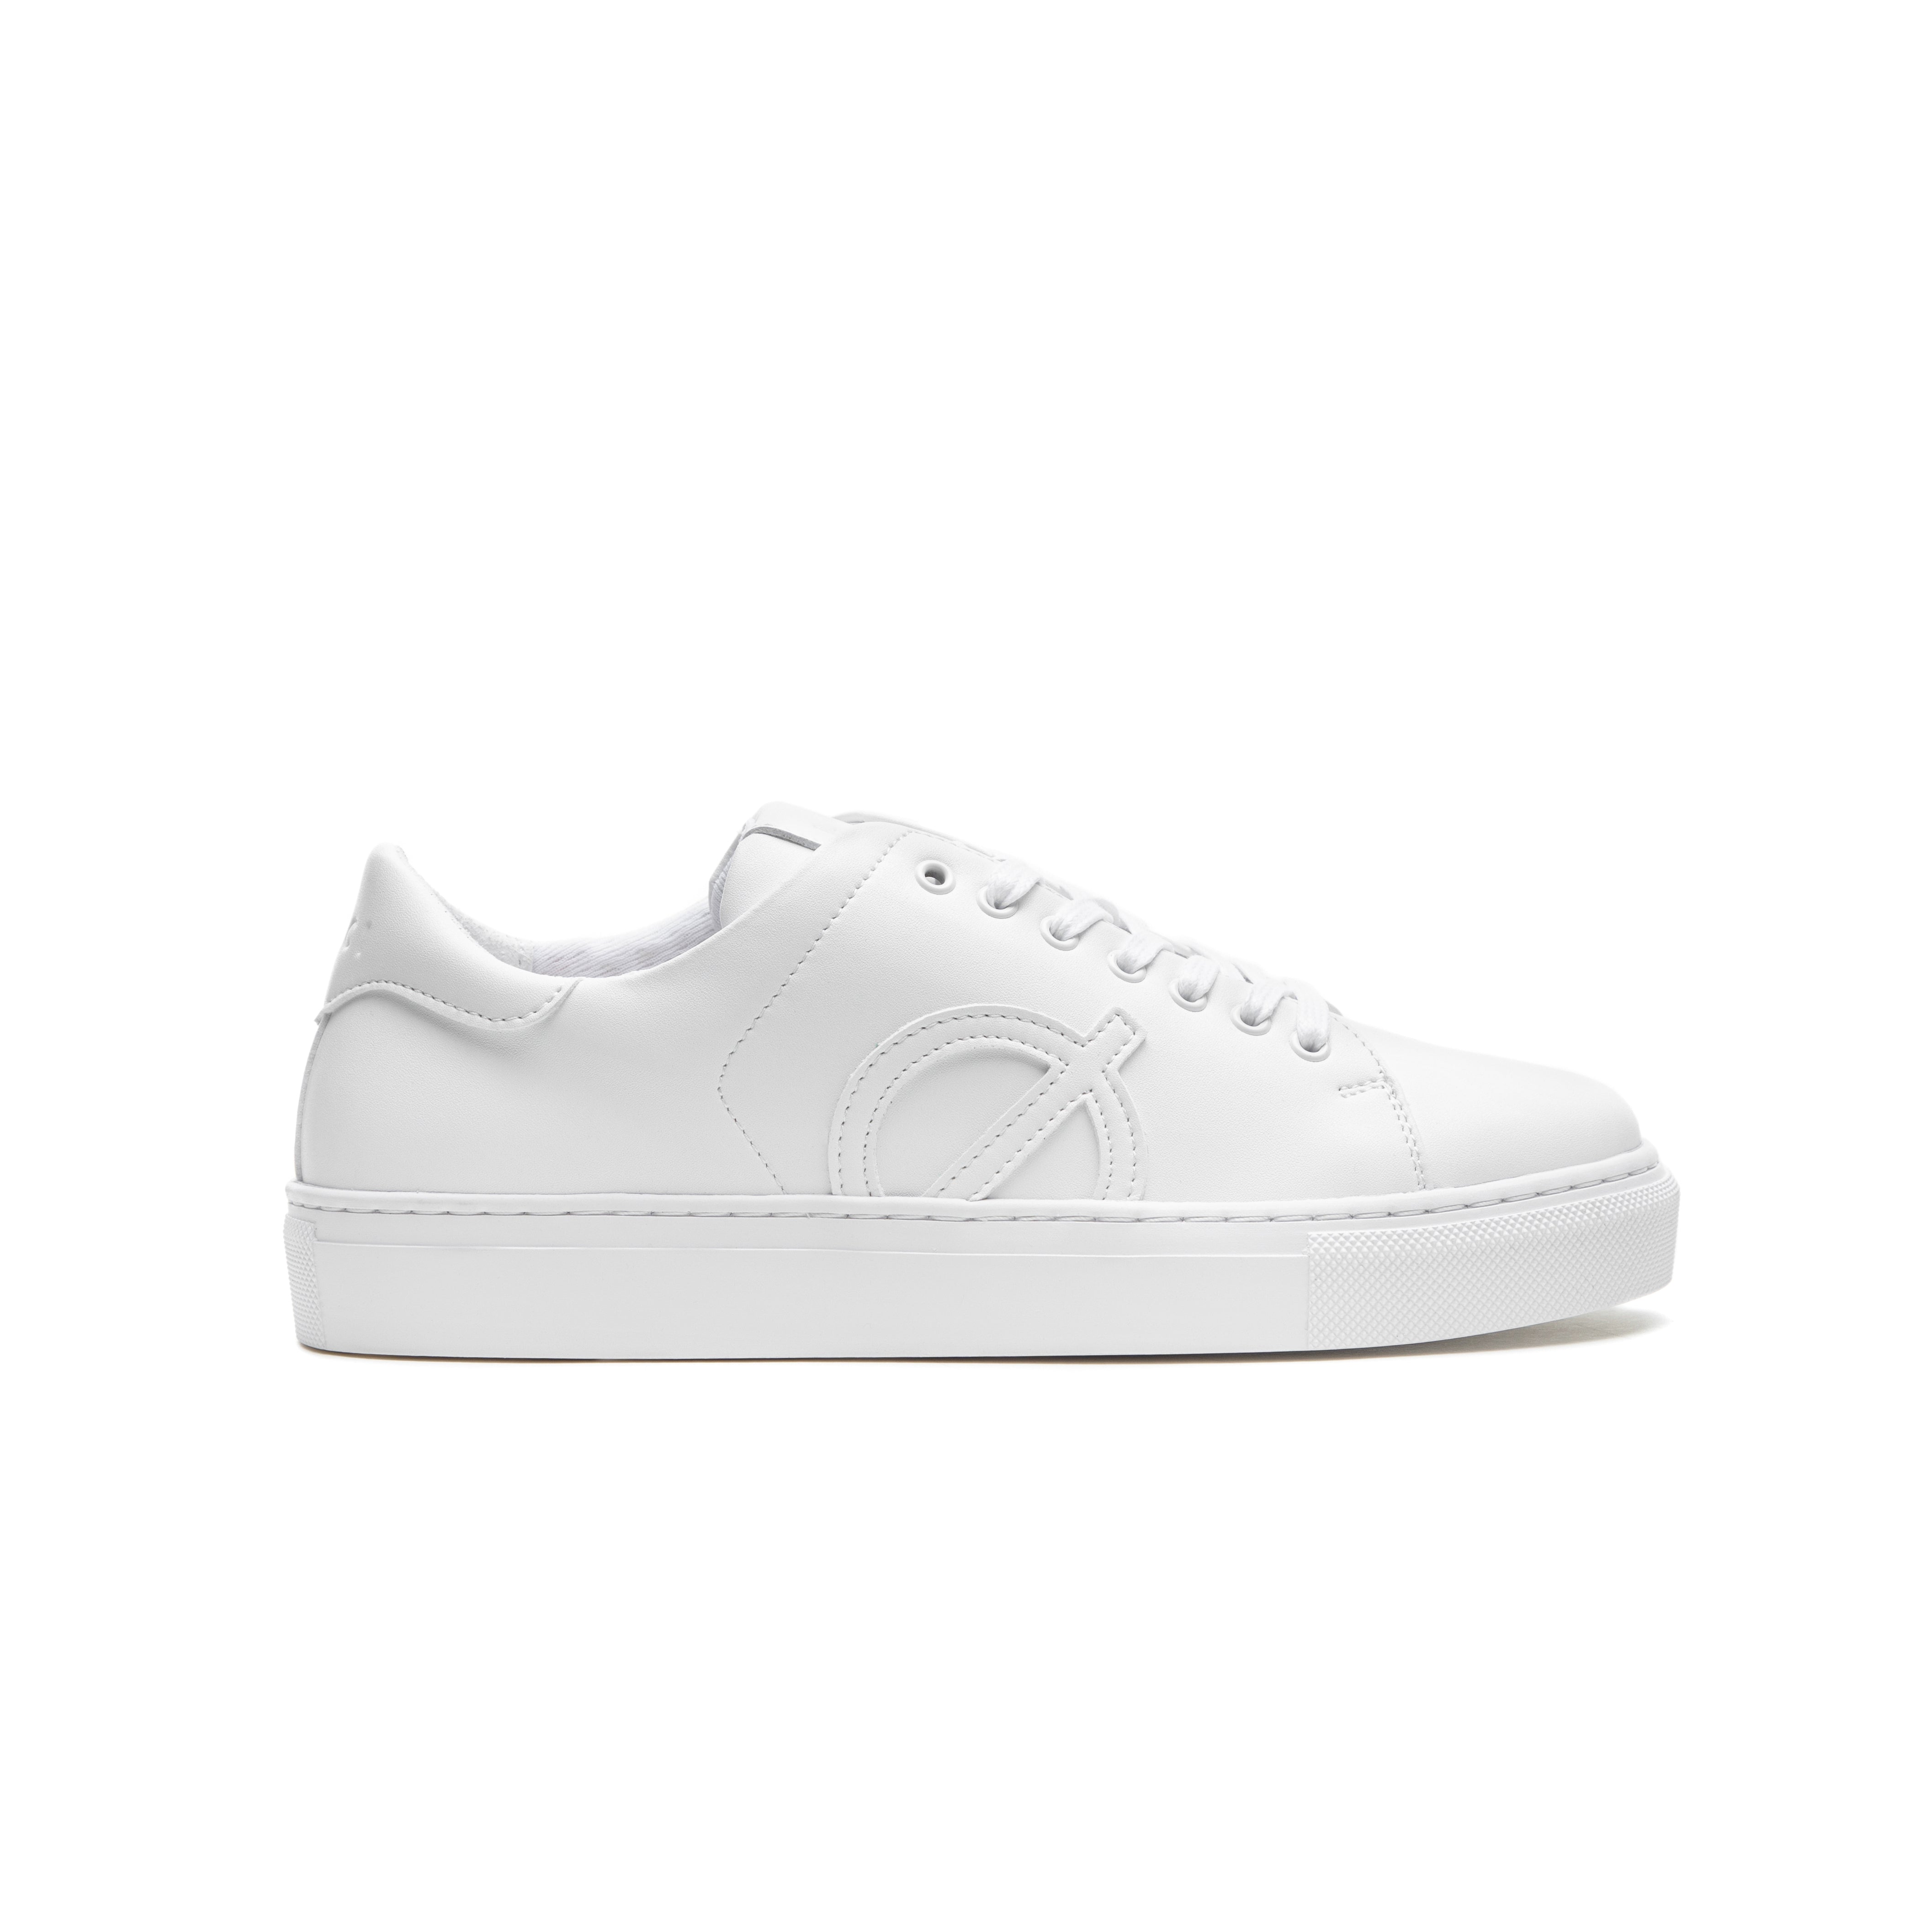 Loci Origin Sneaker White/White 3.5 